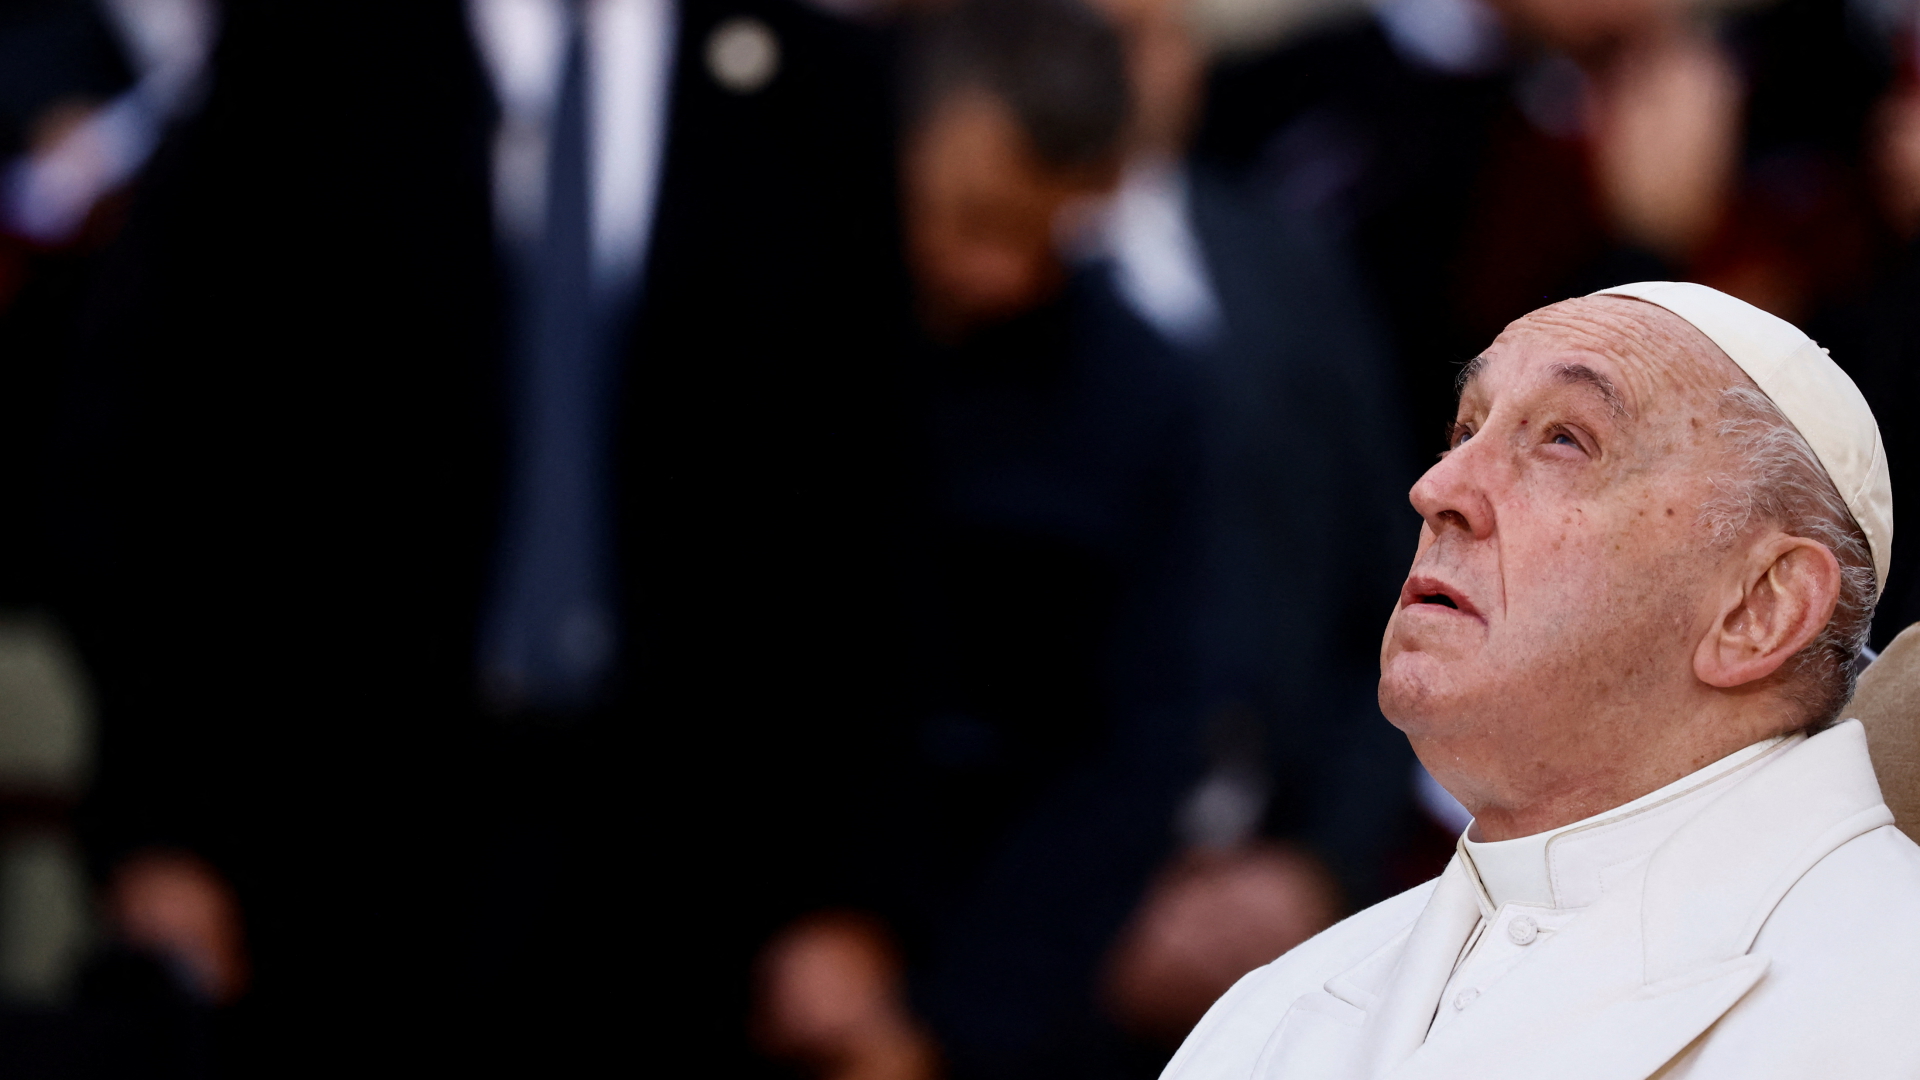 Papst Franziskus bei der traditionellen Zeremonie am Fest der Unbefleckten Empfängnis Mariens in Rom. | REUTERS